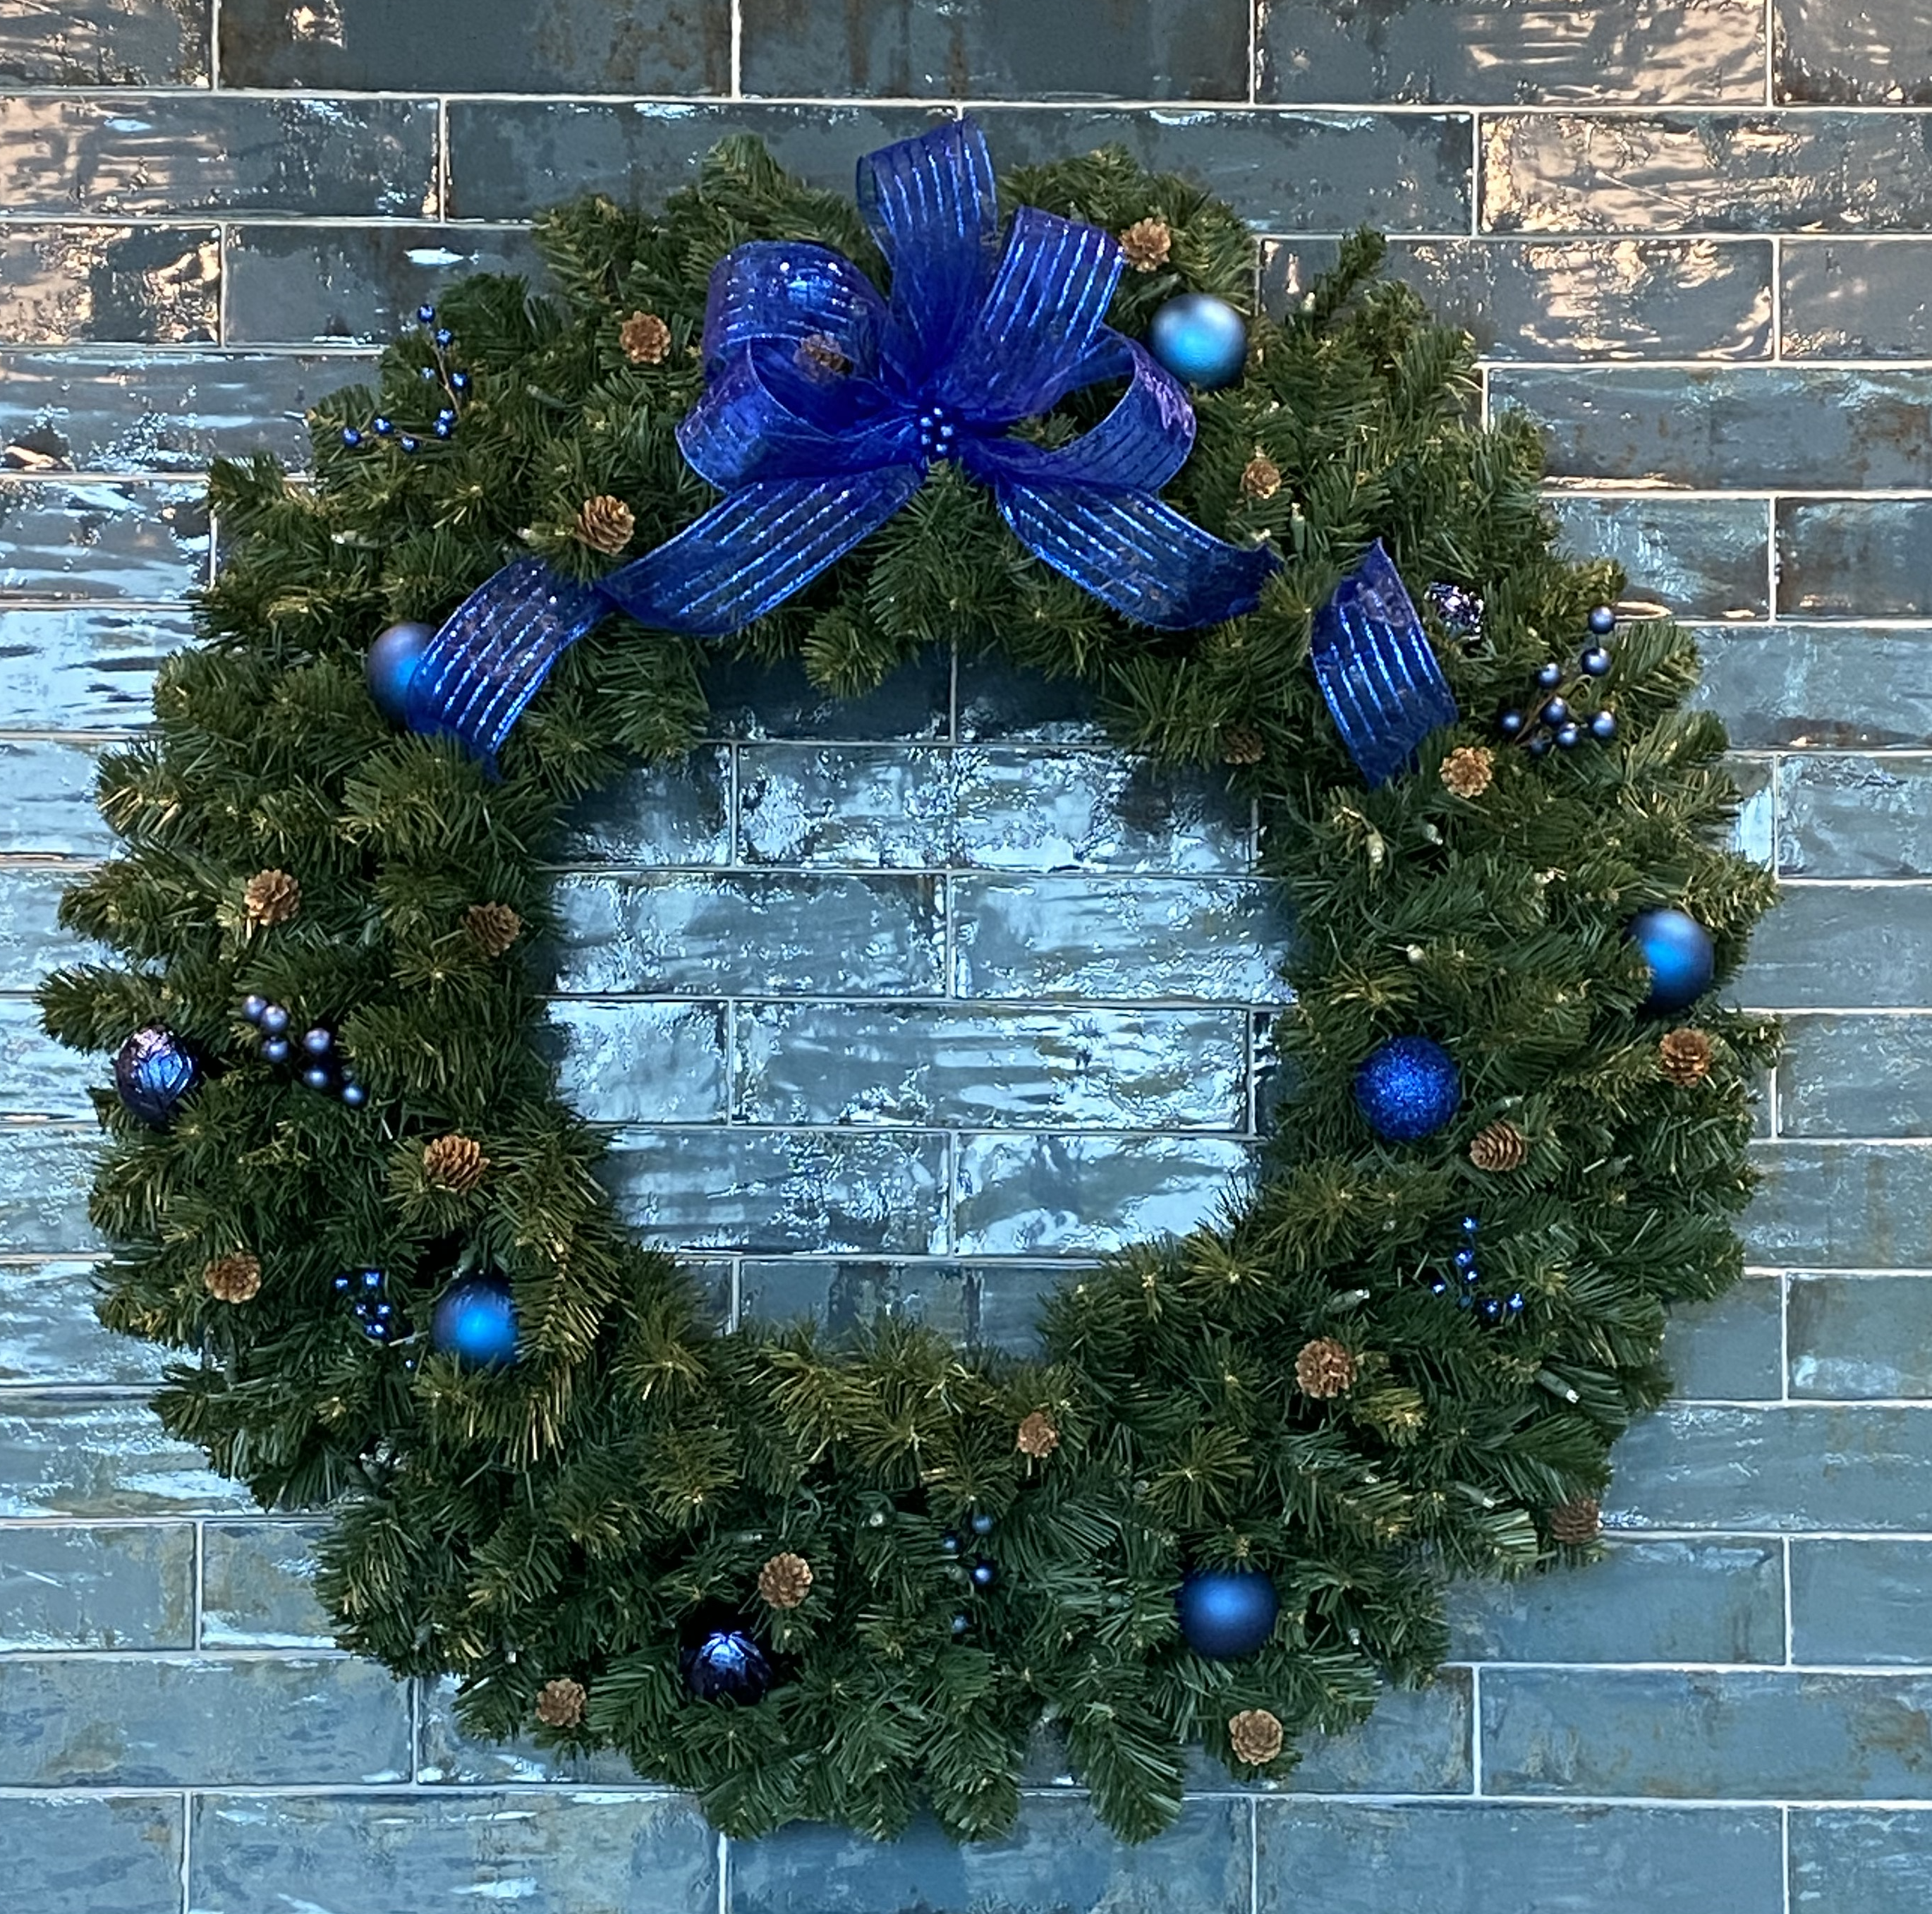 Lighted wreath on wood door